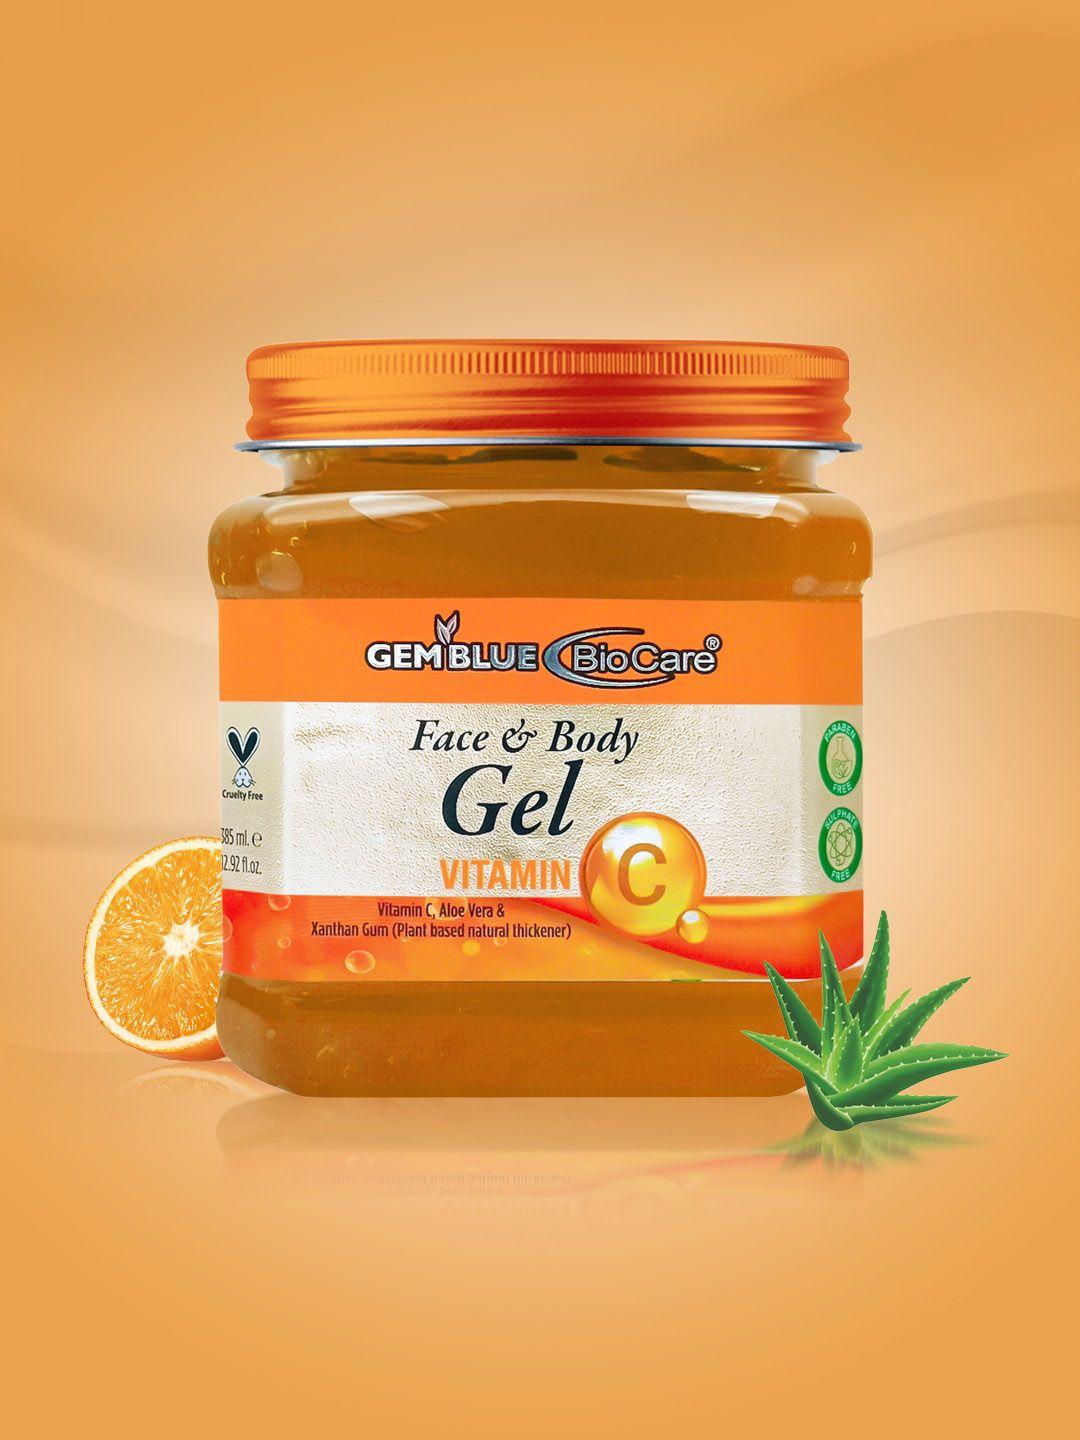 gemblue biocare vitamin c face & body gel